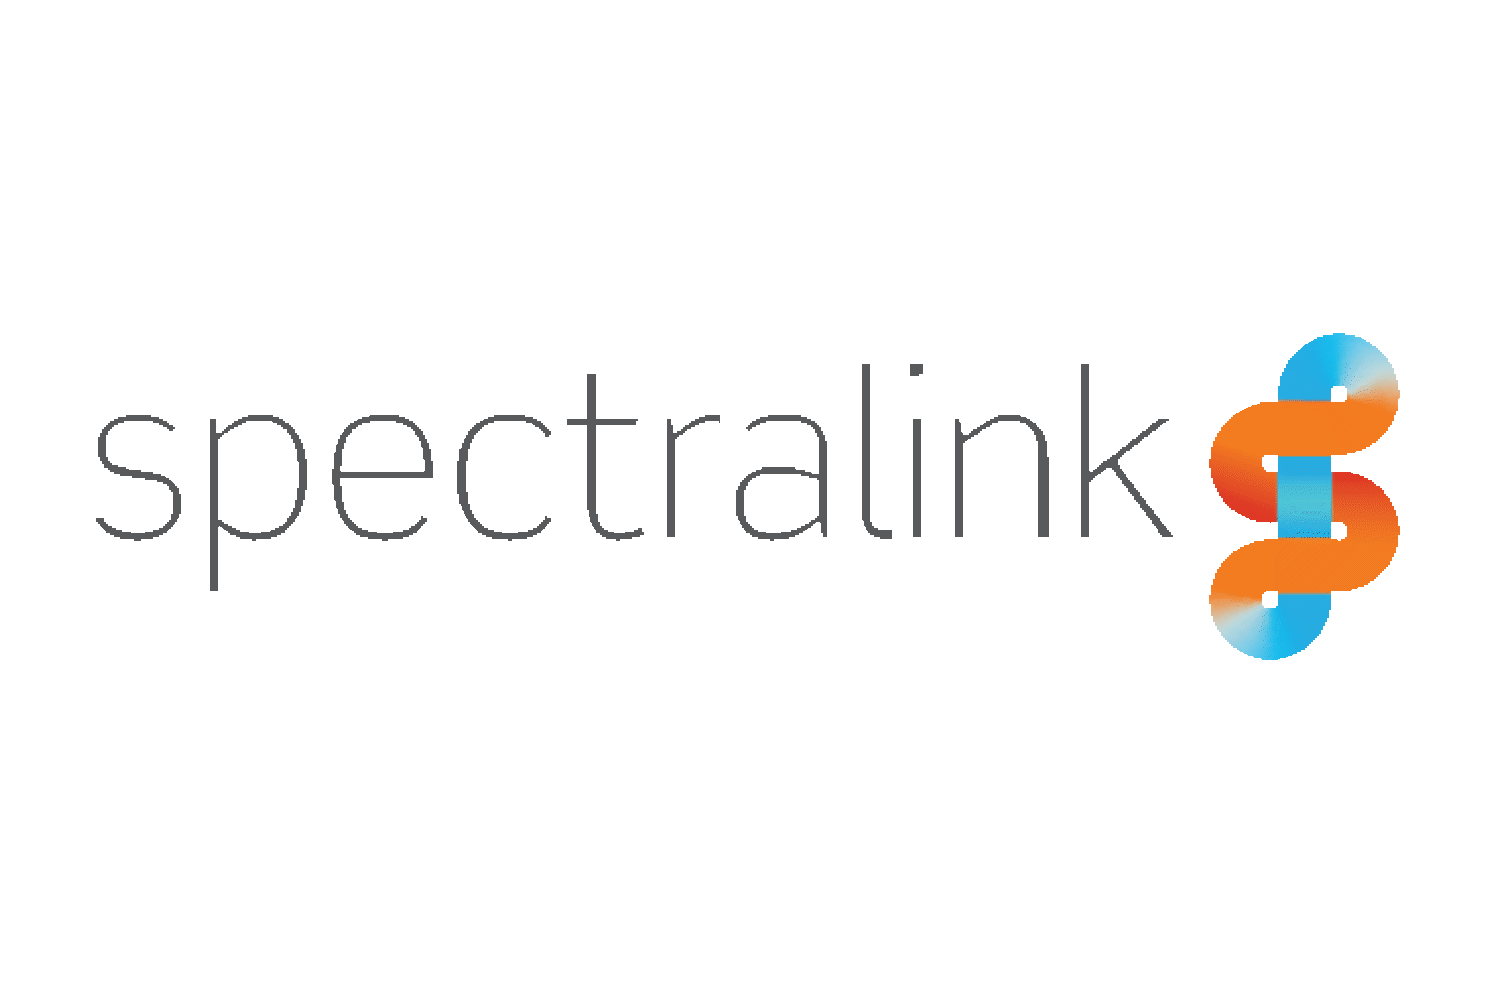 SpectraLink